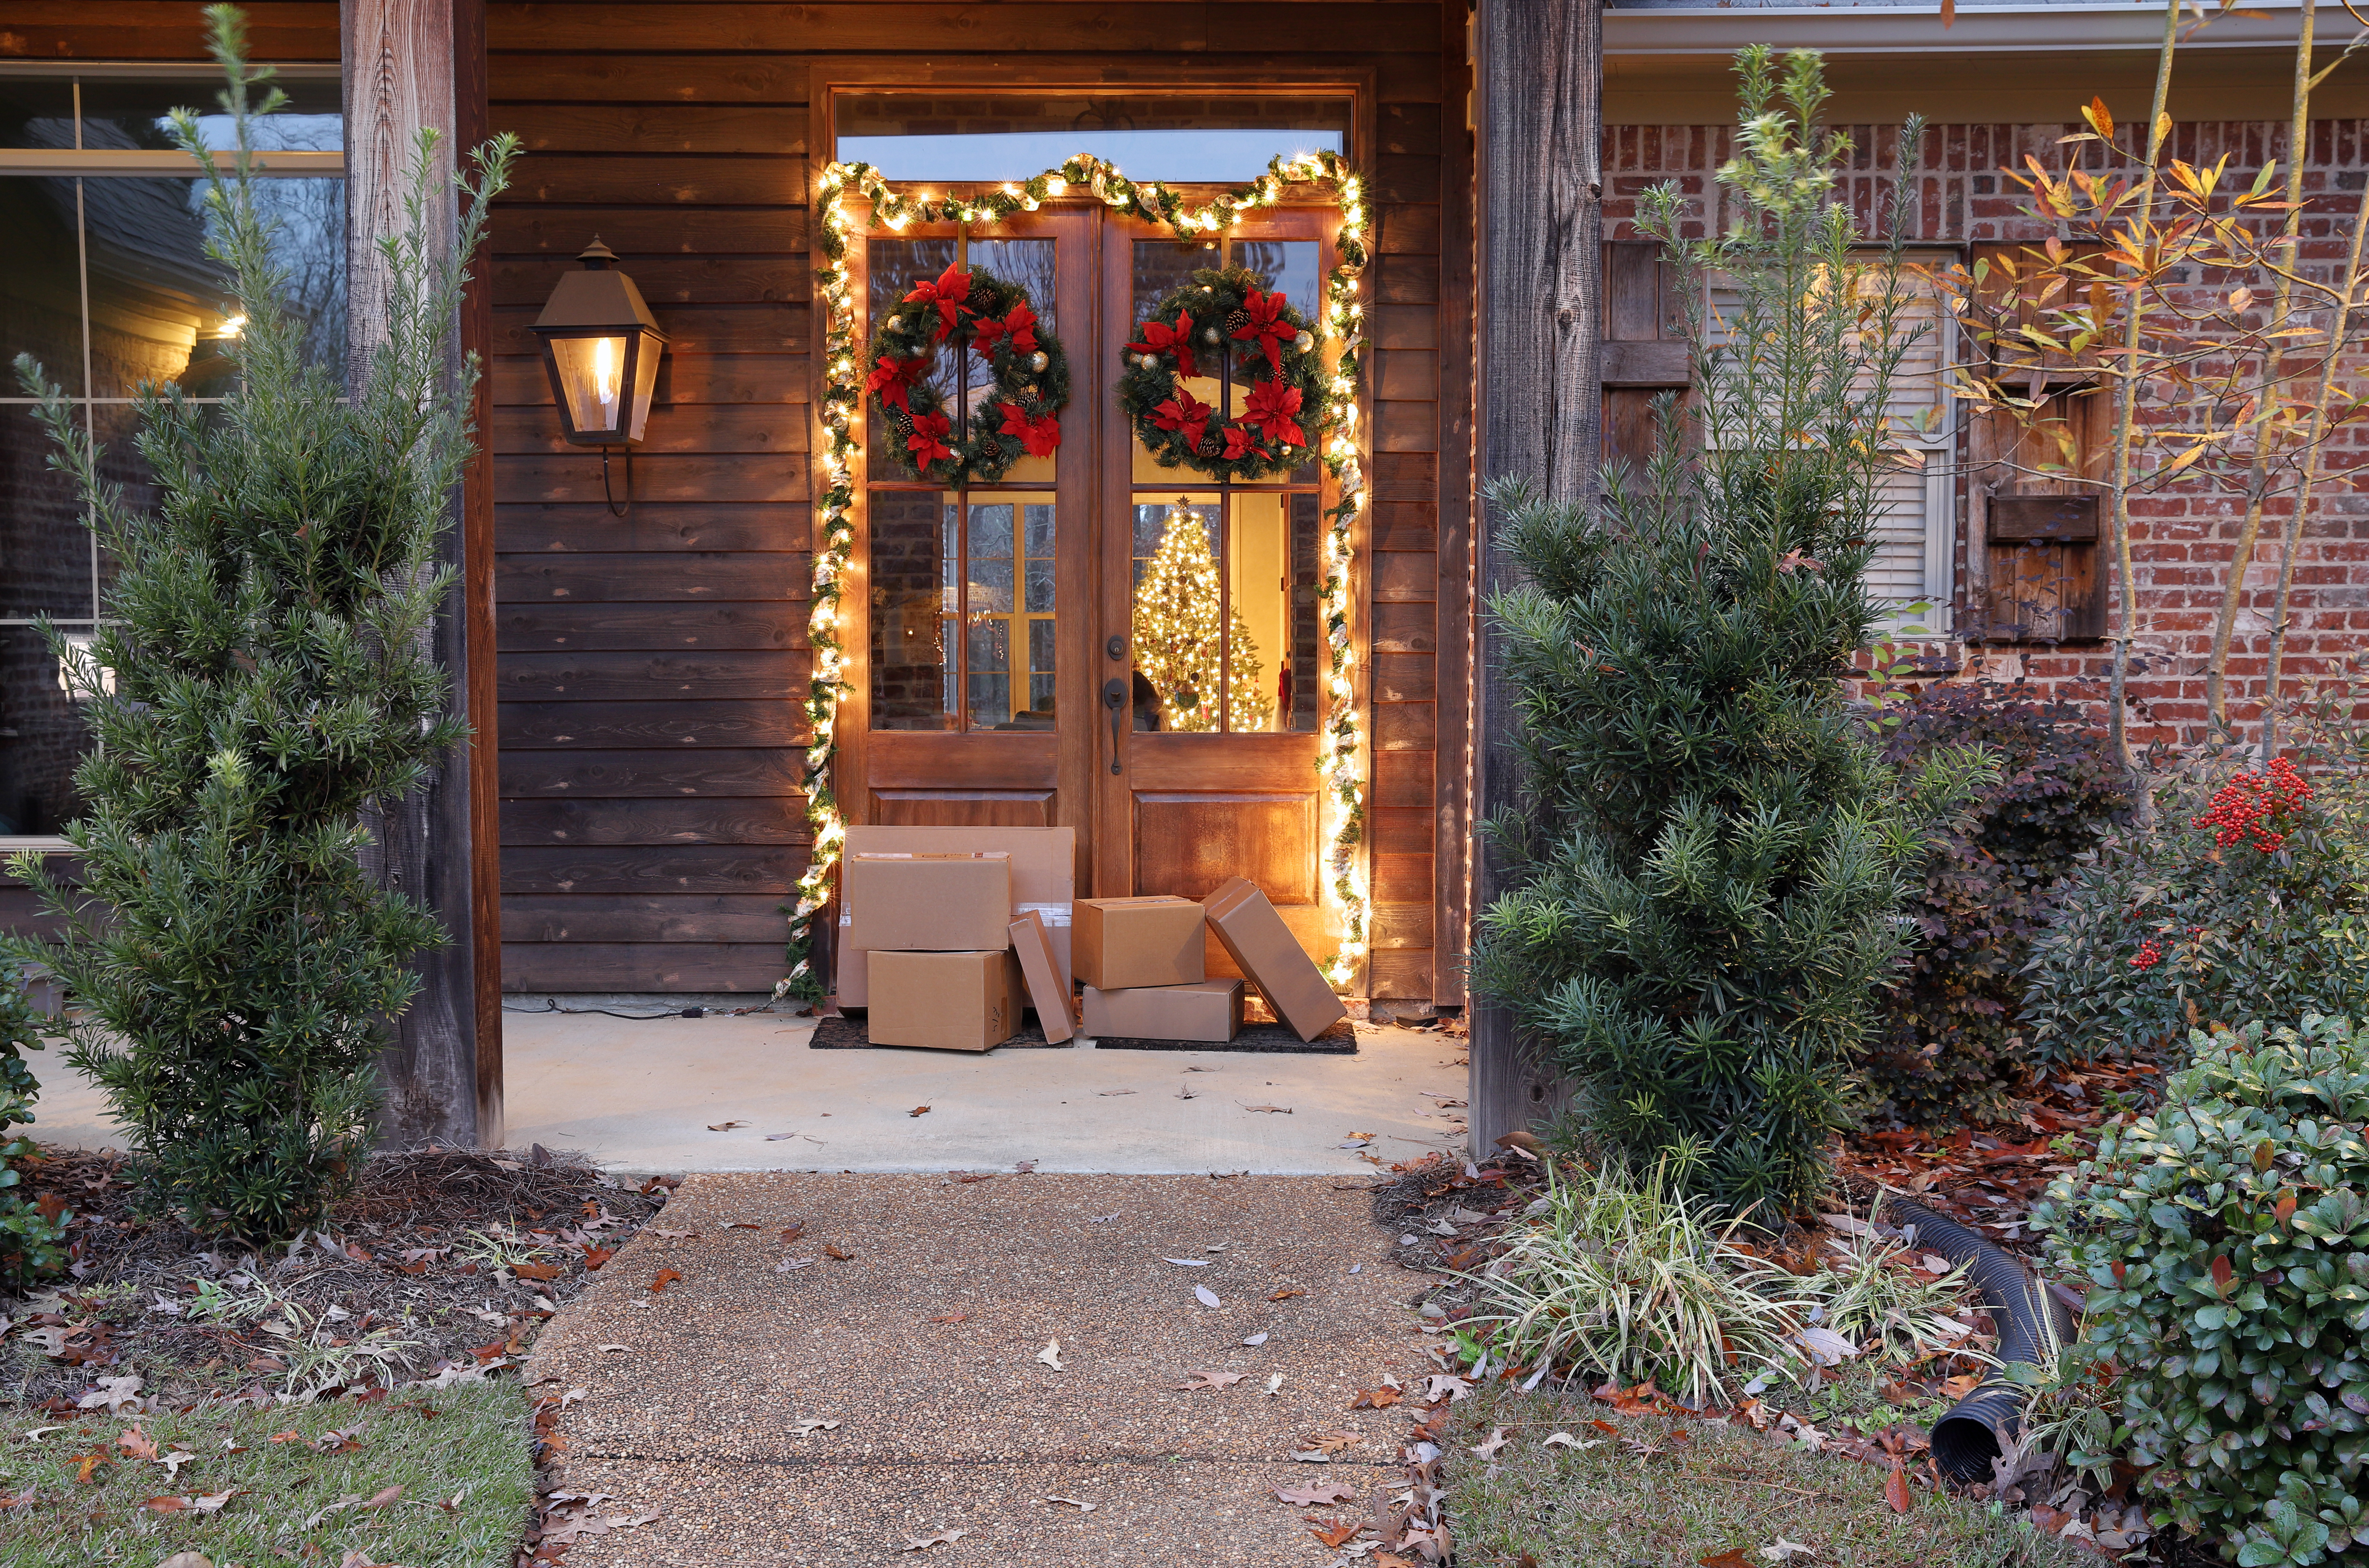 Cajas junto a la puerta principal | Foto: Shutterstock